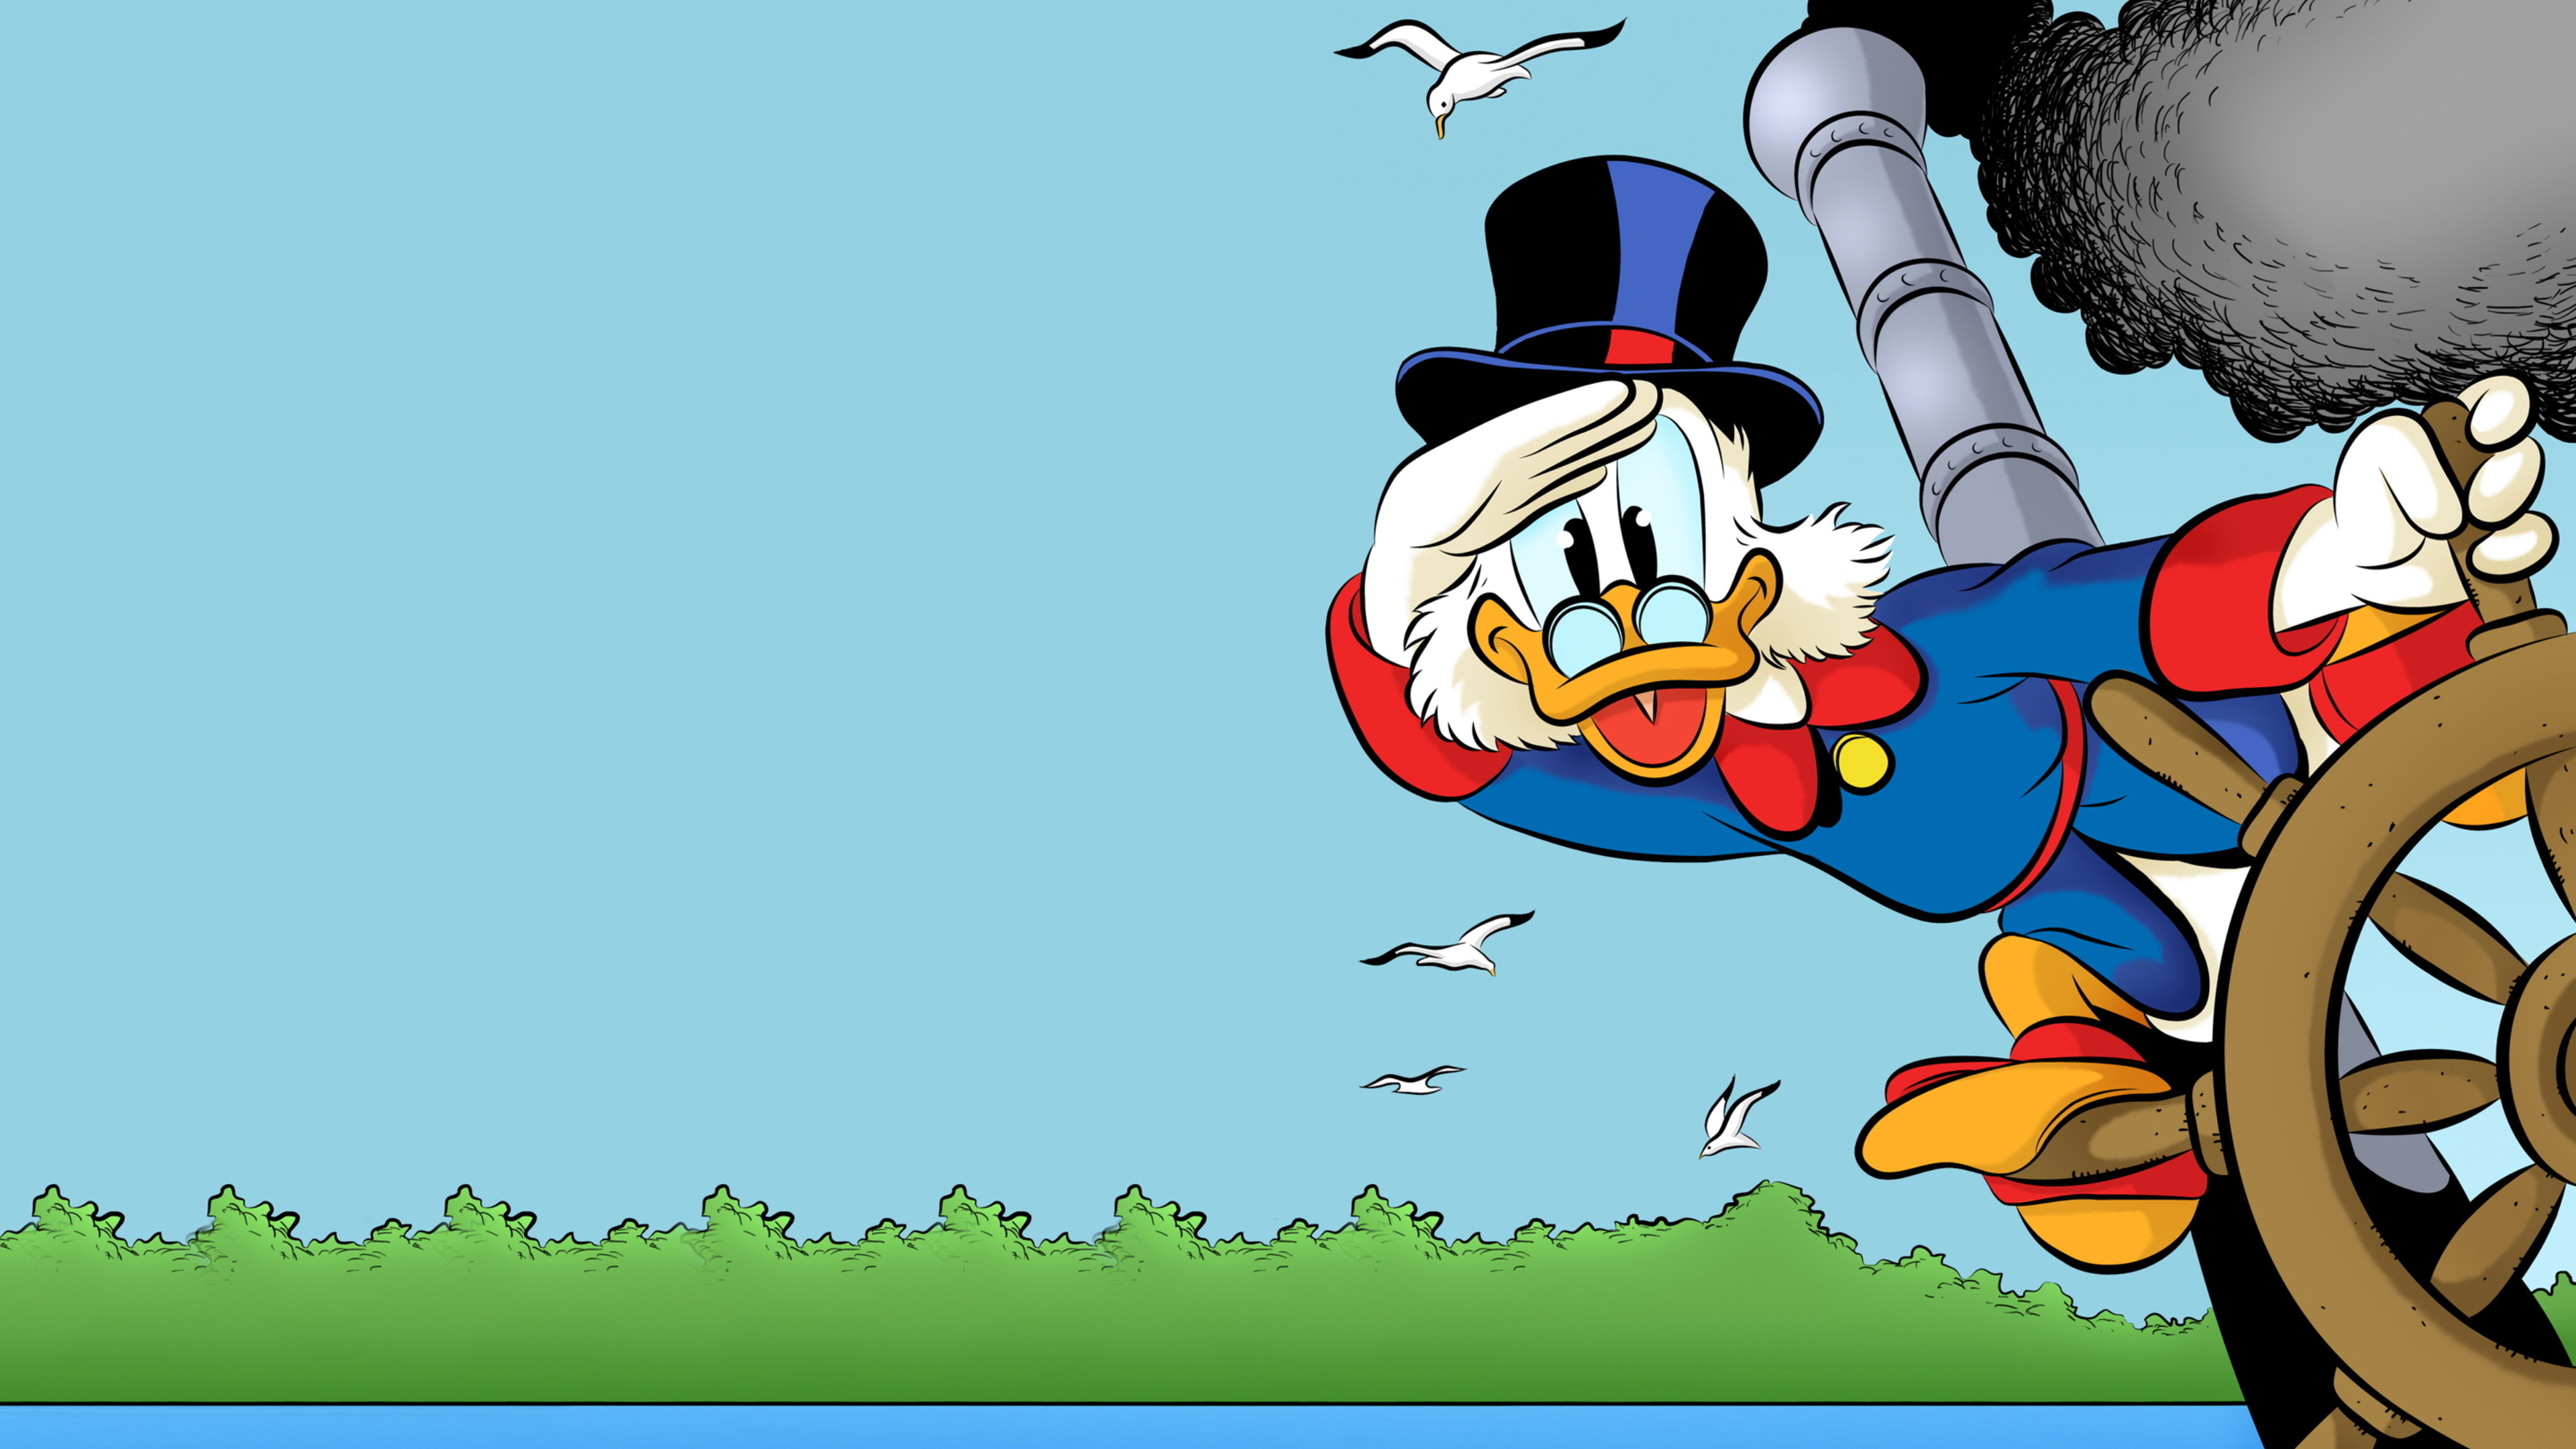 DuckTales, Animation, Remastered wallpapers, 3840x2160 4K Desktop